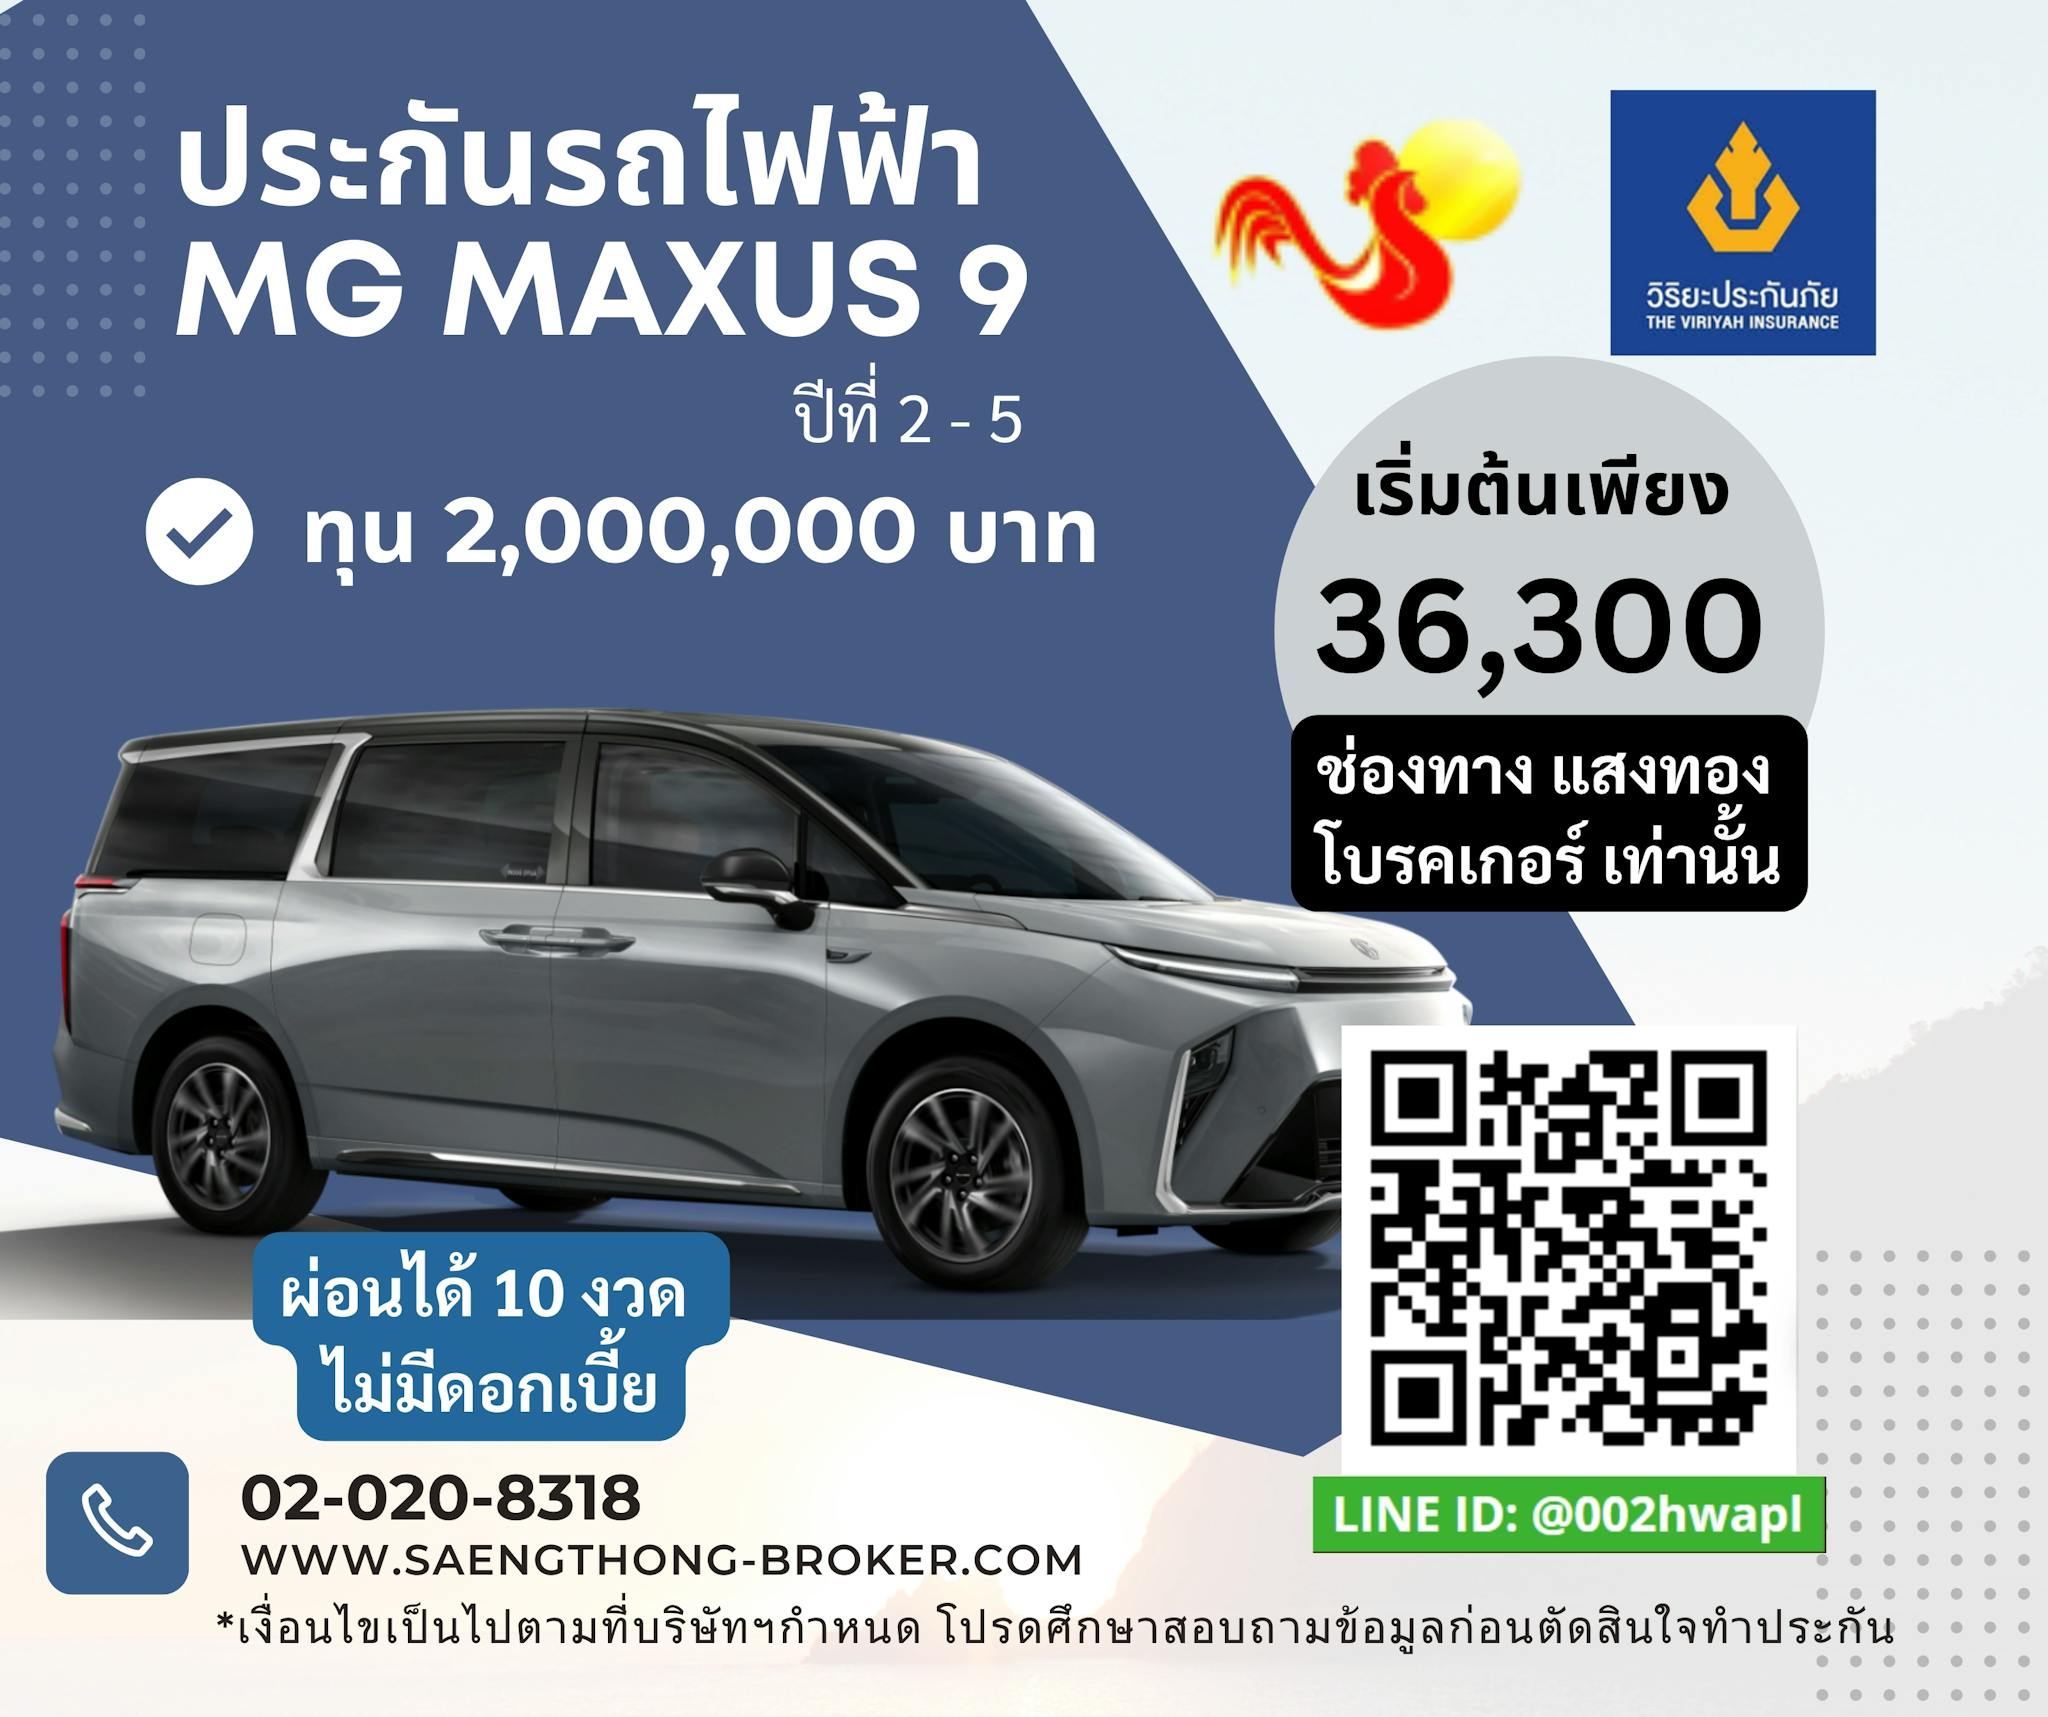 ราคาเบี้ยประกันรถไฟฟ้า MG MAXUS 9 วิริยะประกันภัย